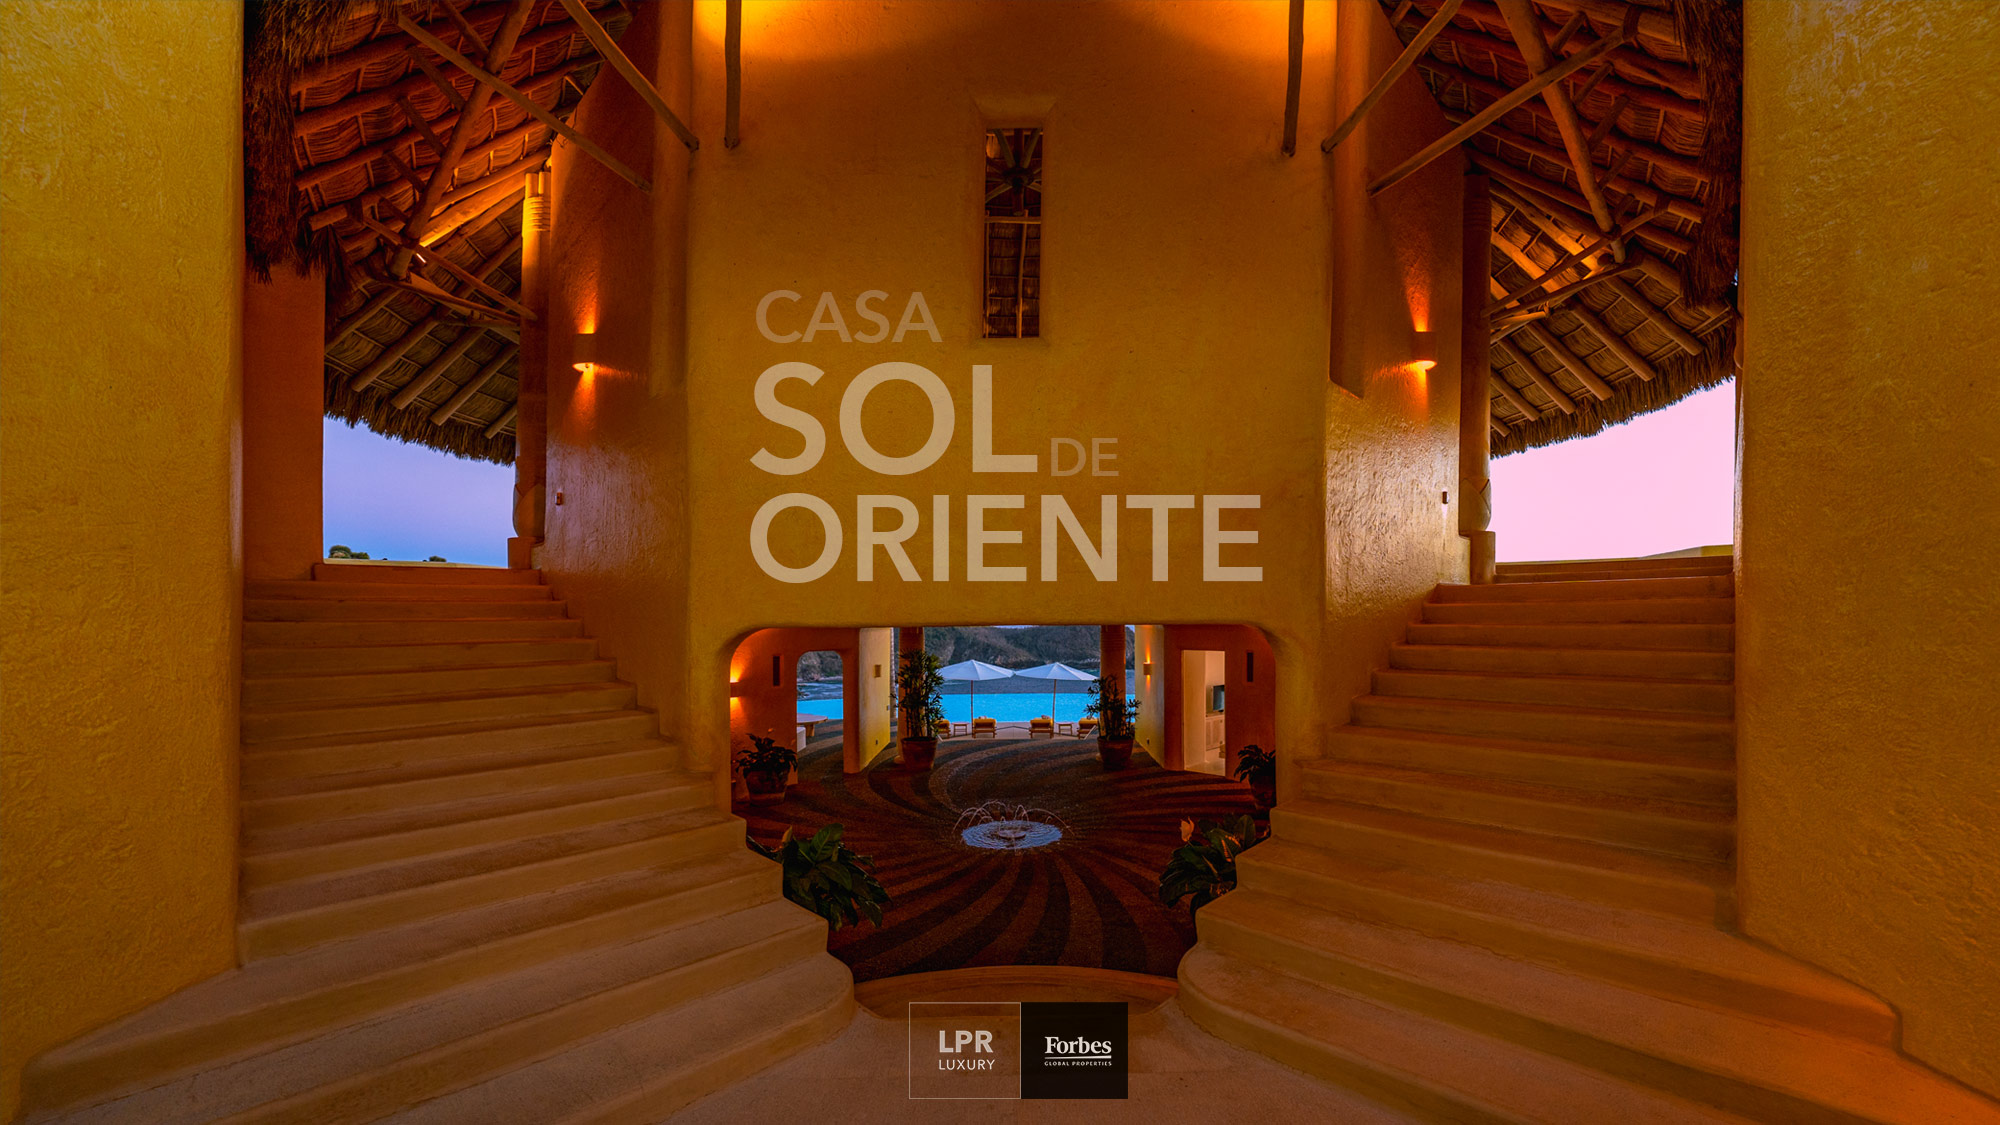 EXPLORE: Costa Careyes | Costalegre, Mexico - Upscale remote jet set joie de vivre tropical Mexique